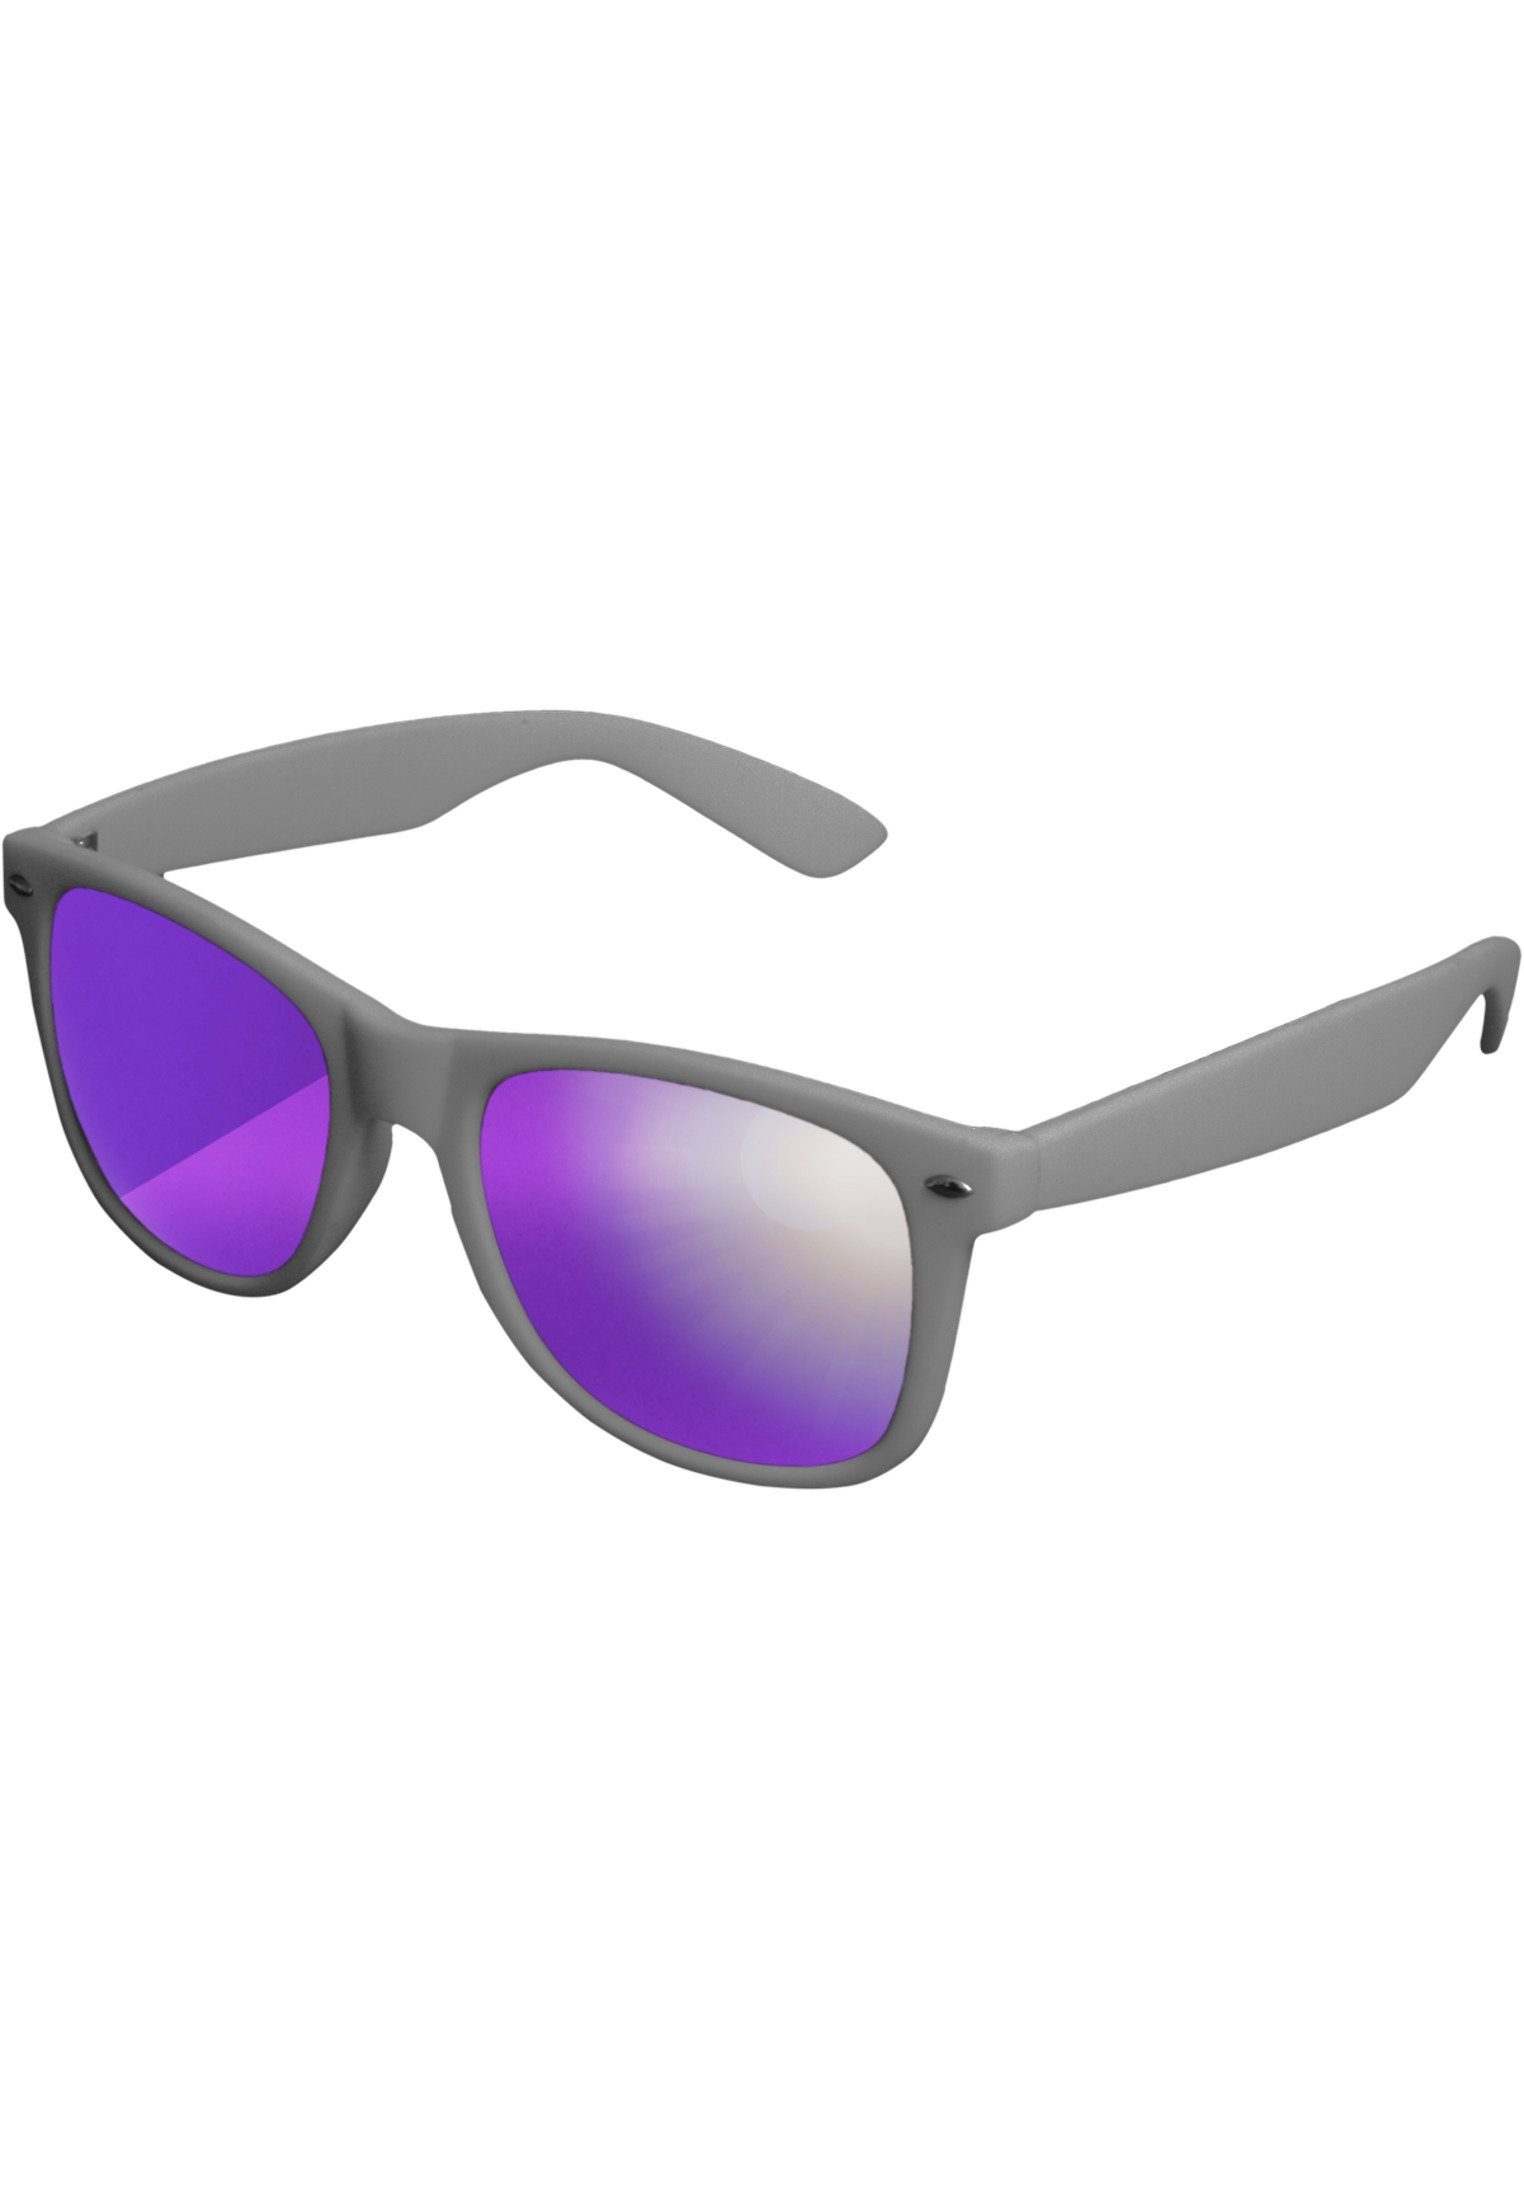 MSTRDS Sonnenbrille auch geeignet Mirror, Accessoires Sunglasses Ideal im Freien Sport Likoma für